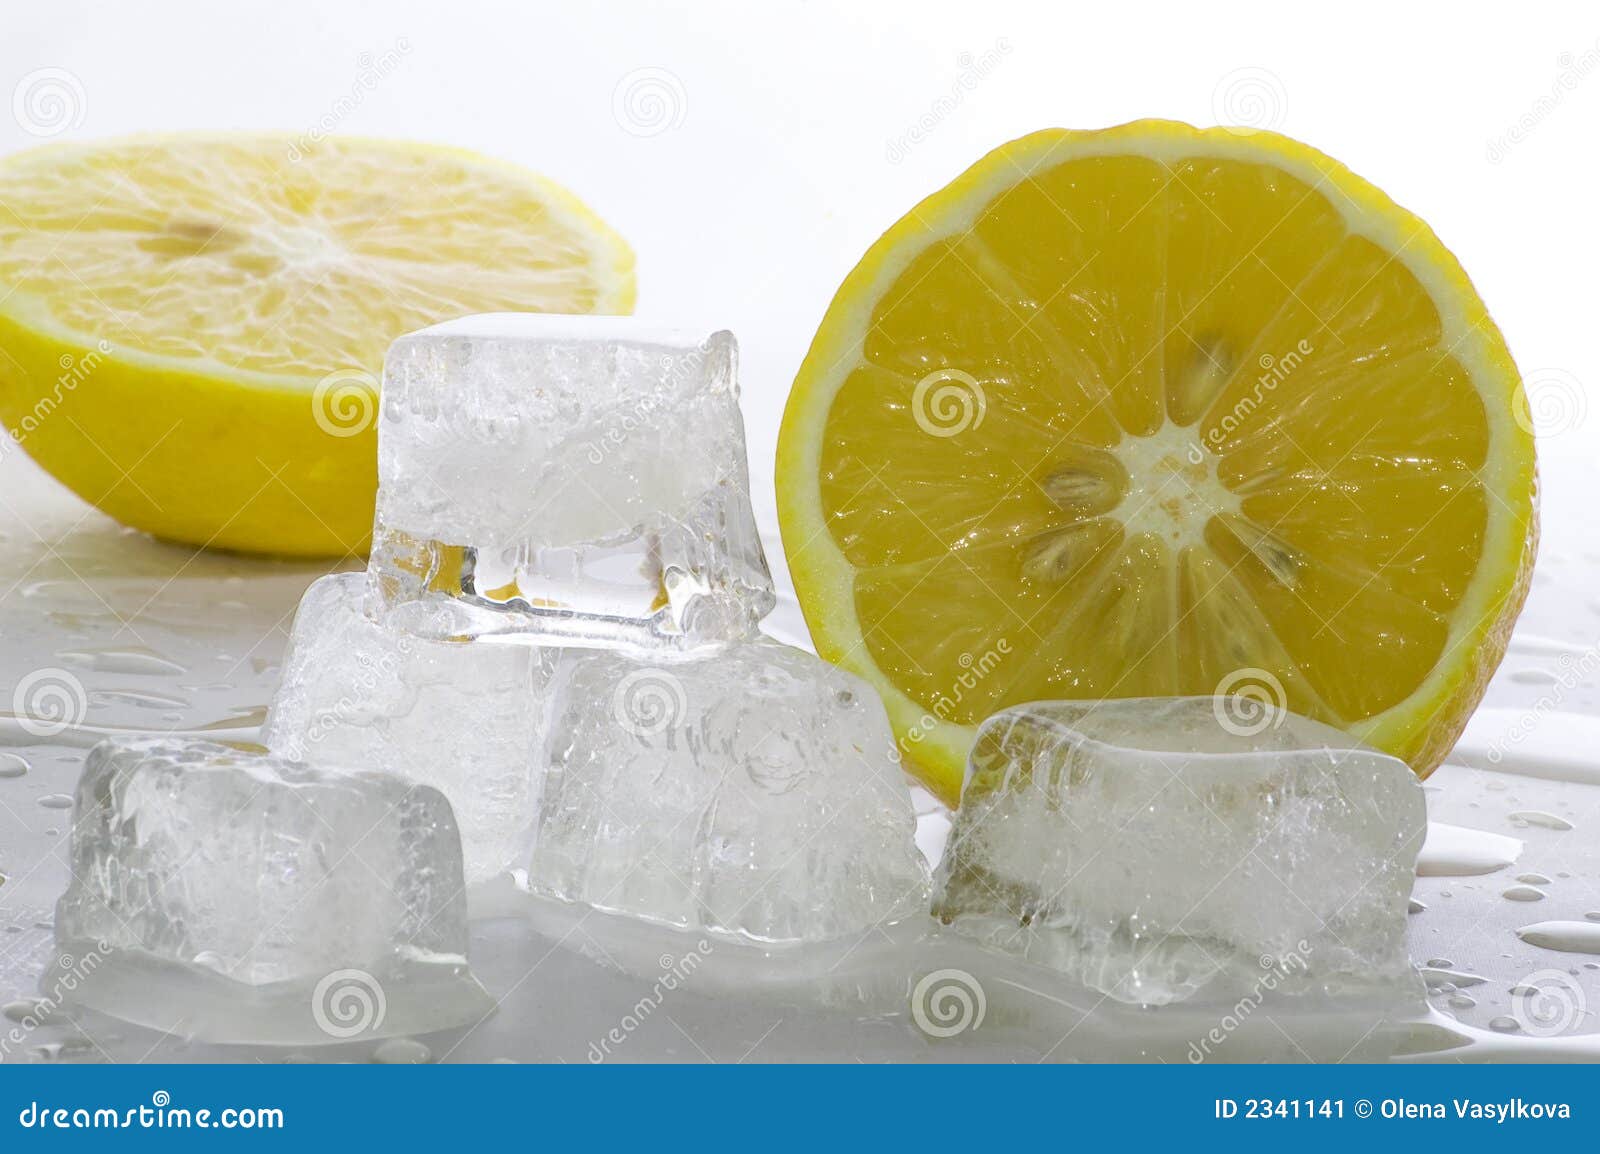 在冰美式里加上一块柠檬或者青柠是什么味道呢？ - 知乎